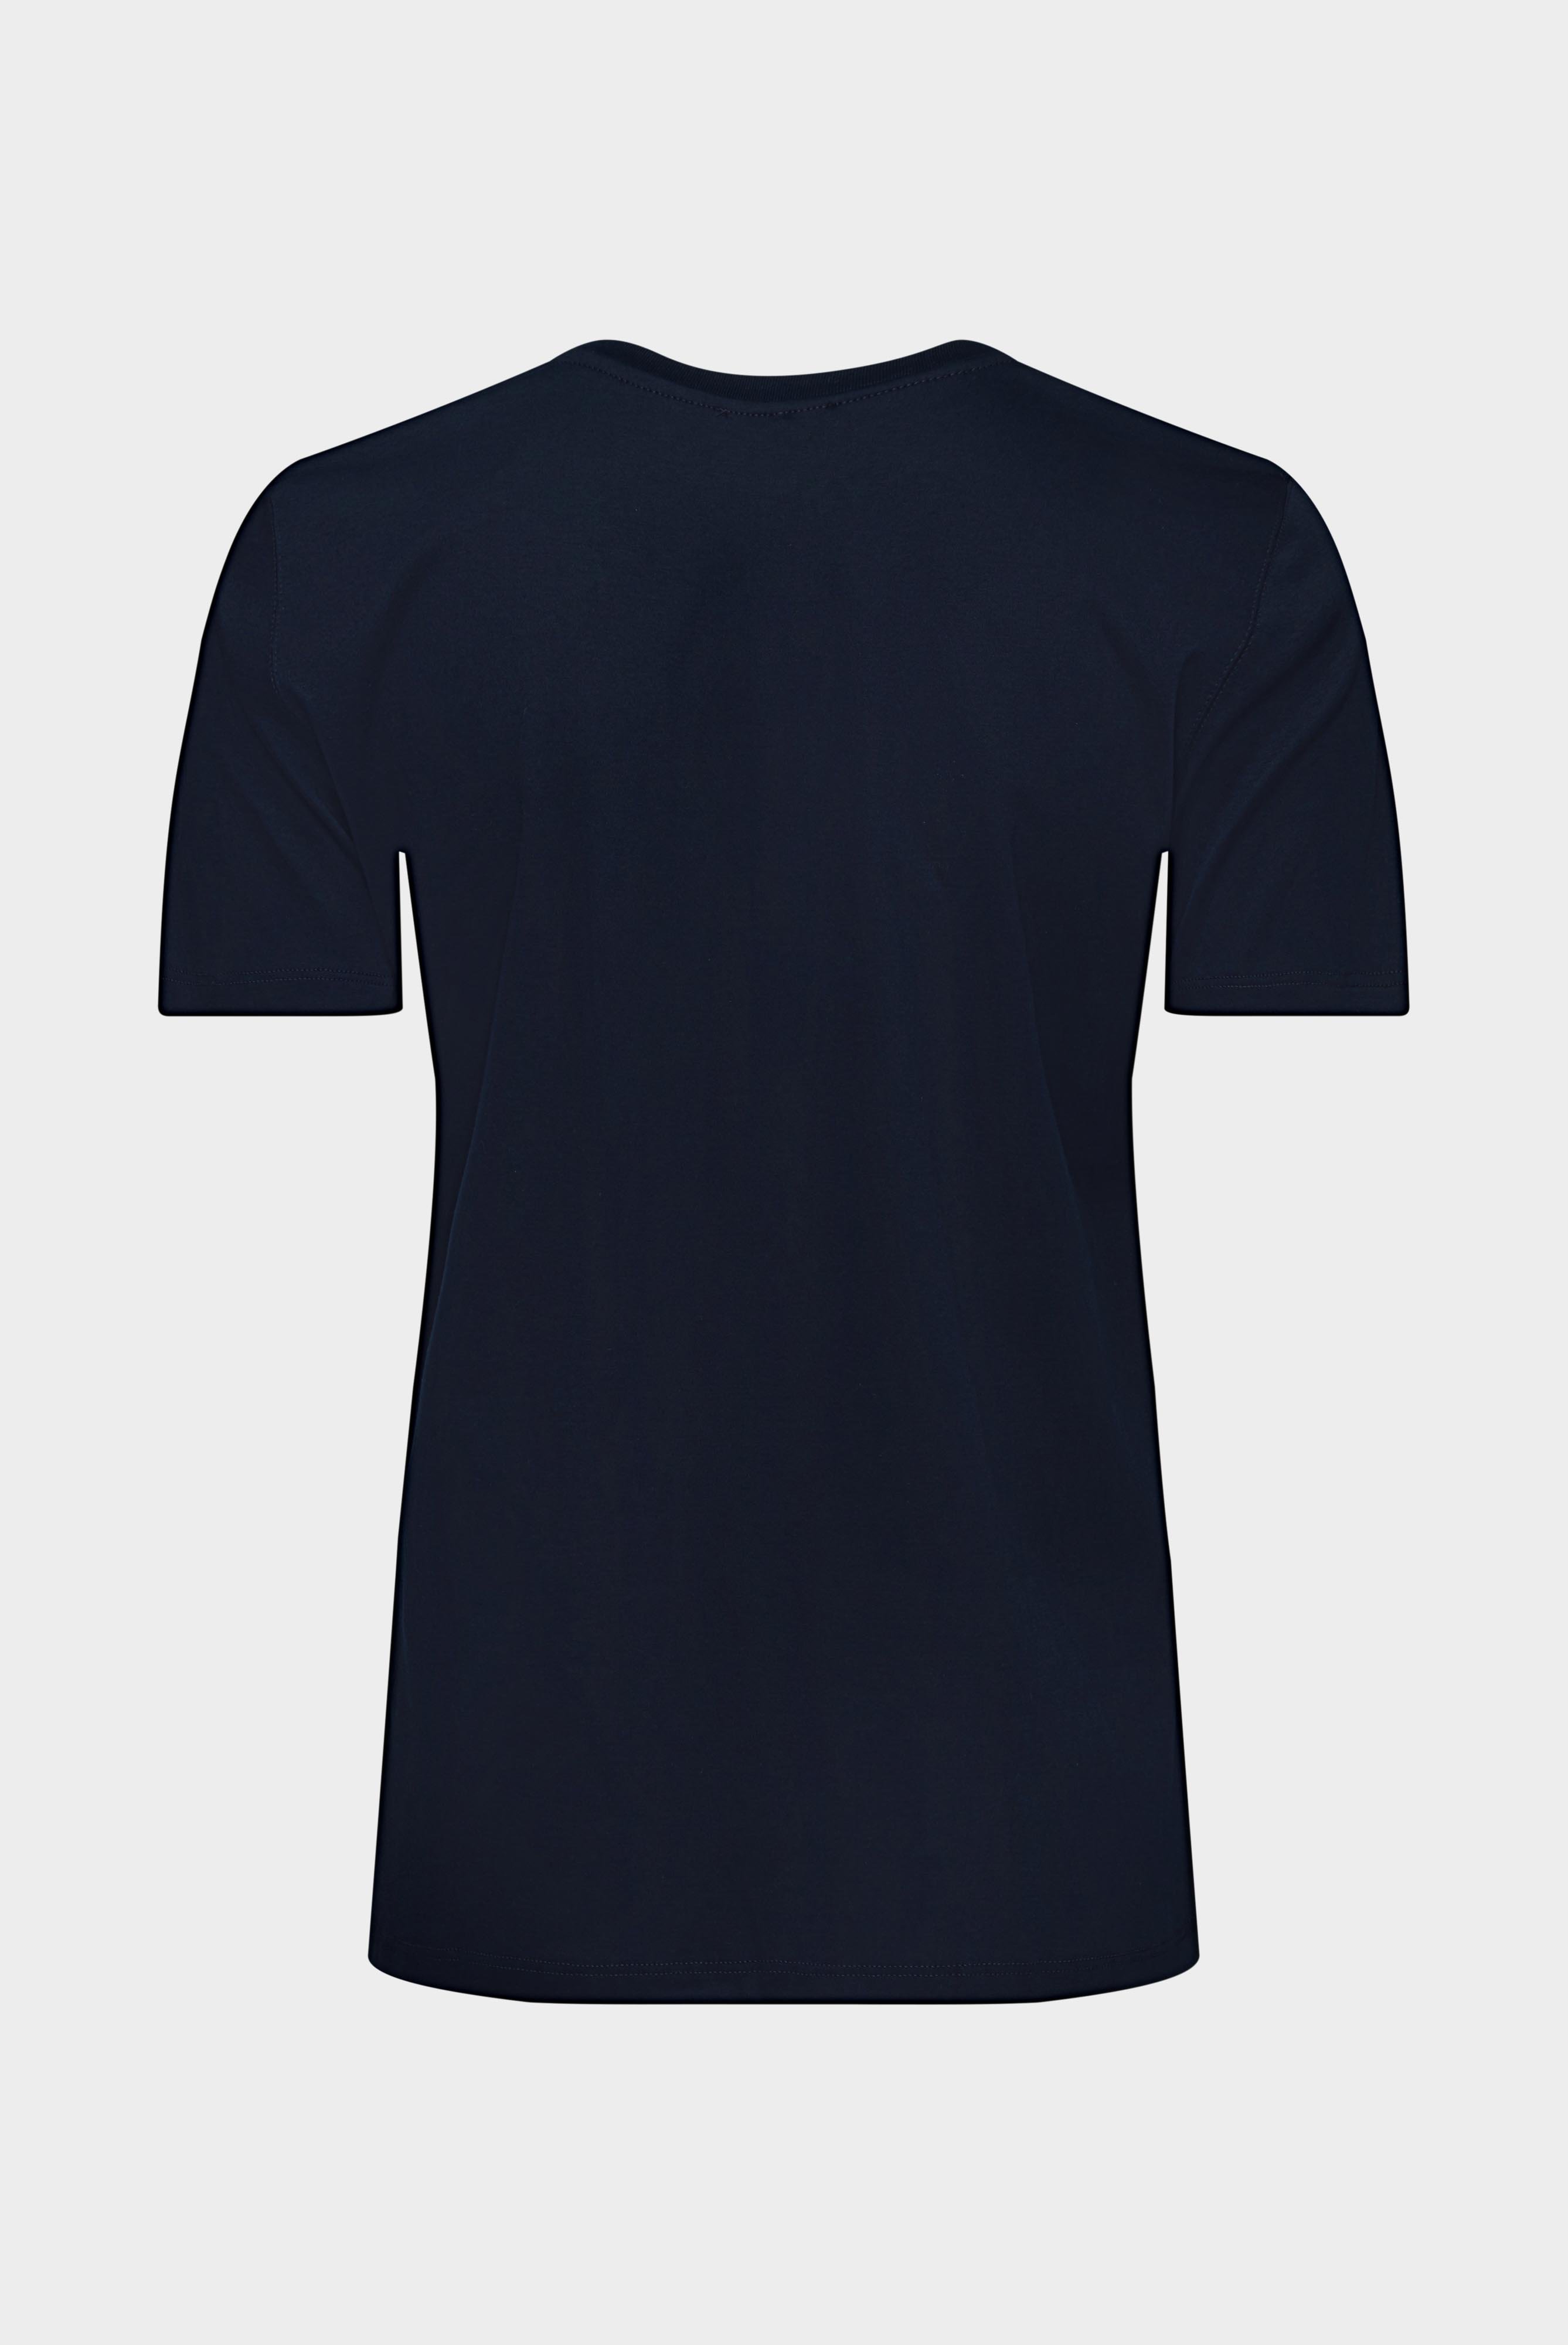 Tops & T-Shirts+Jersey T-Shirt+05.6384.18.180031.790.36